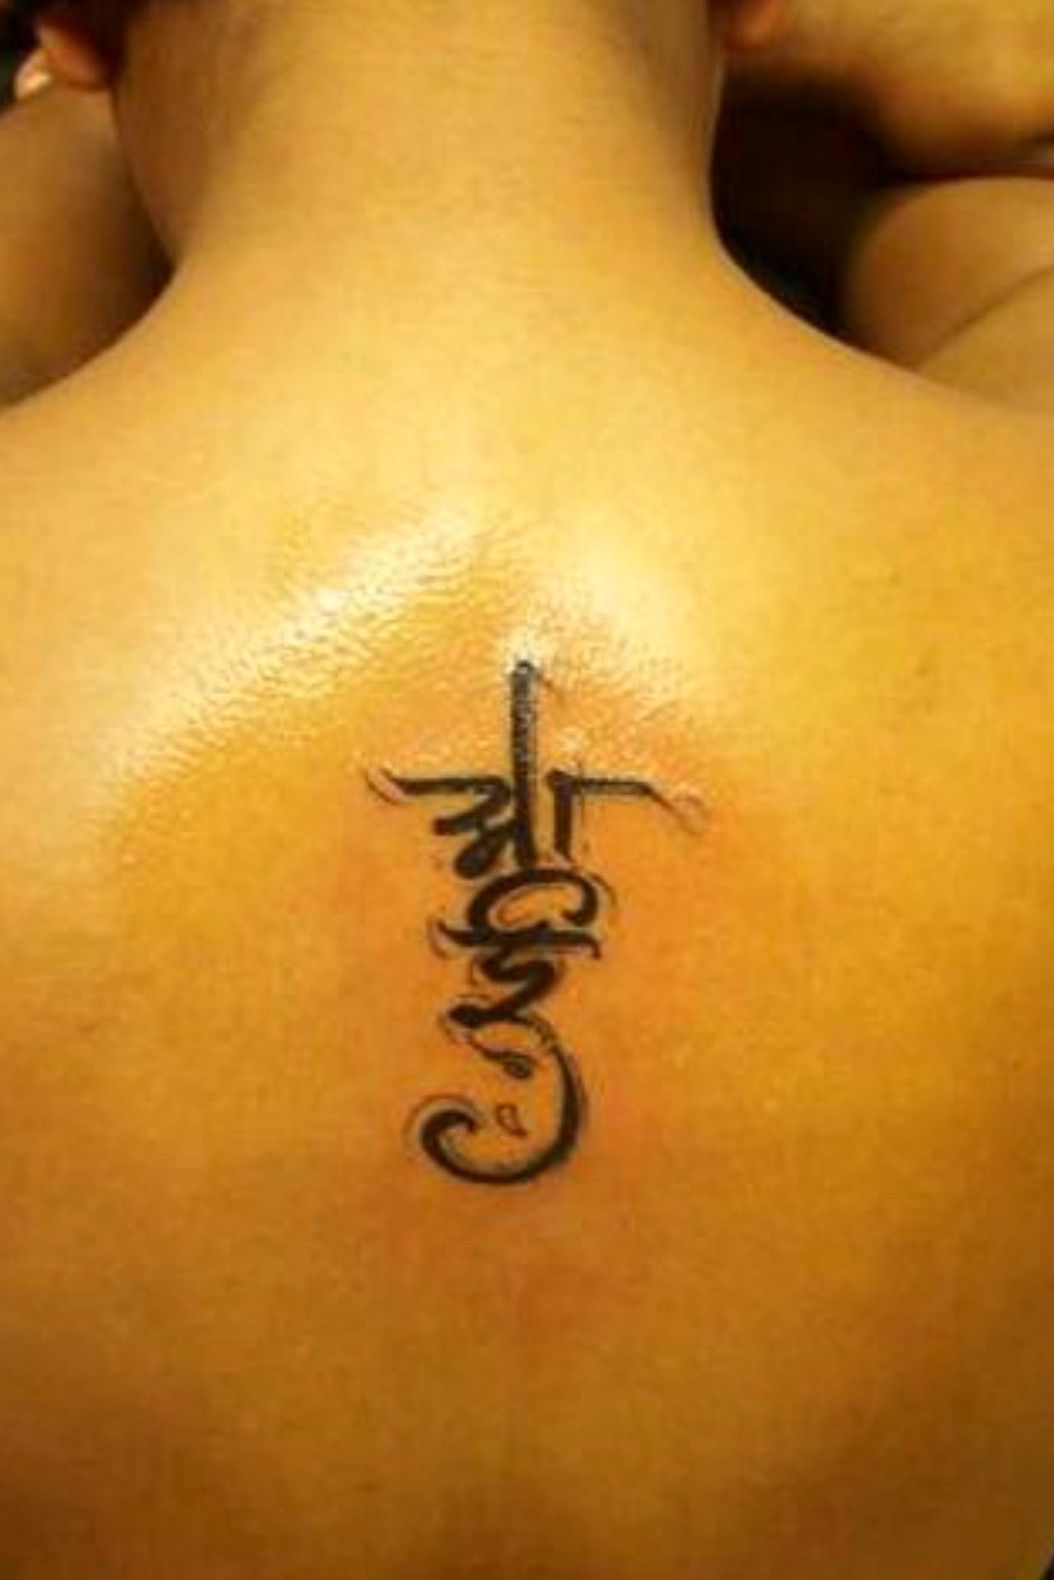 Aai name in Marathi Tattoo  Bff tattoos Tattoos Tattoo designs